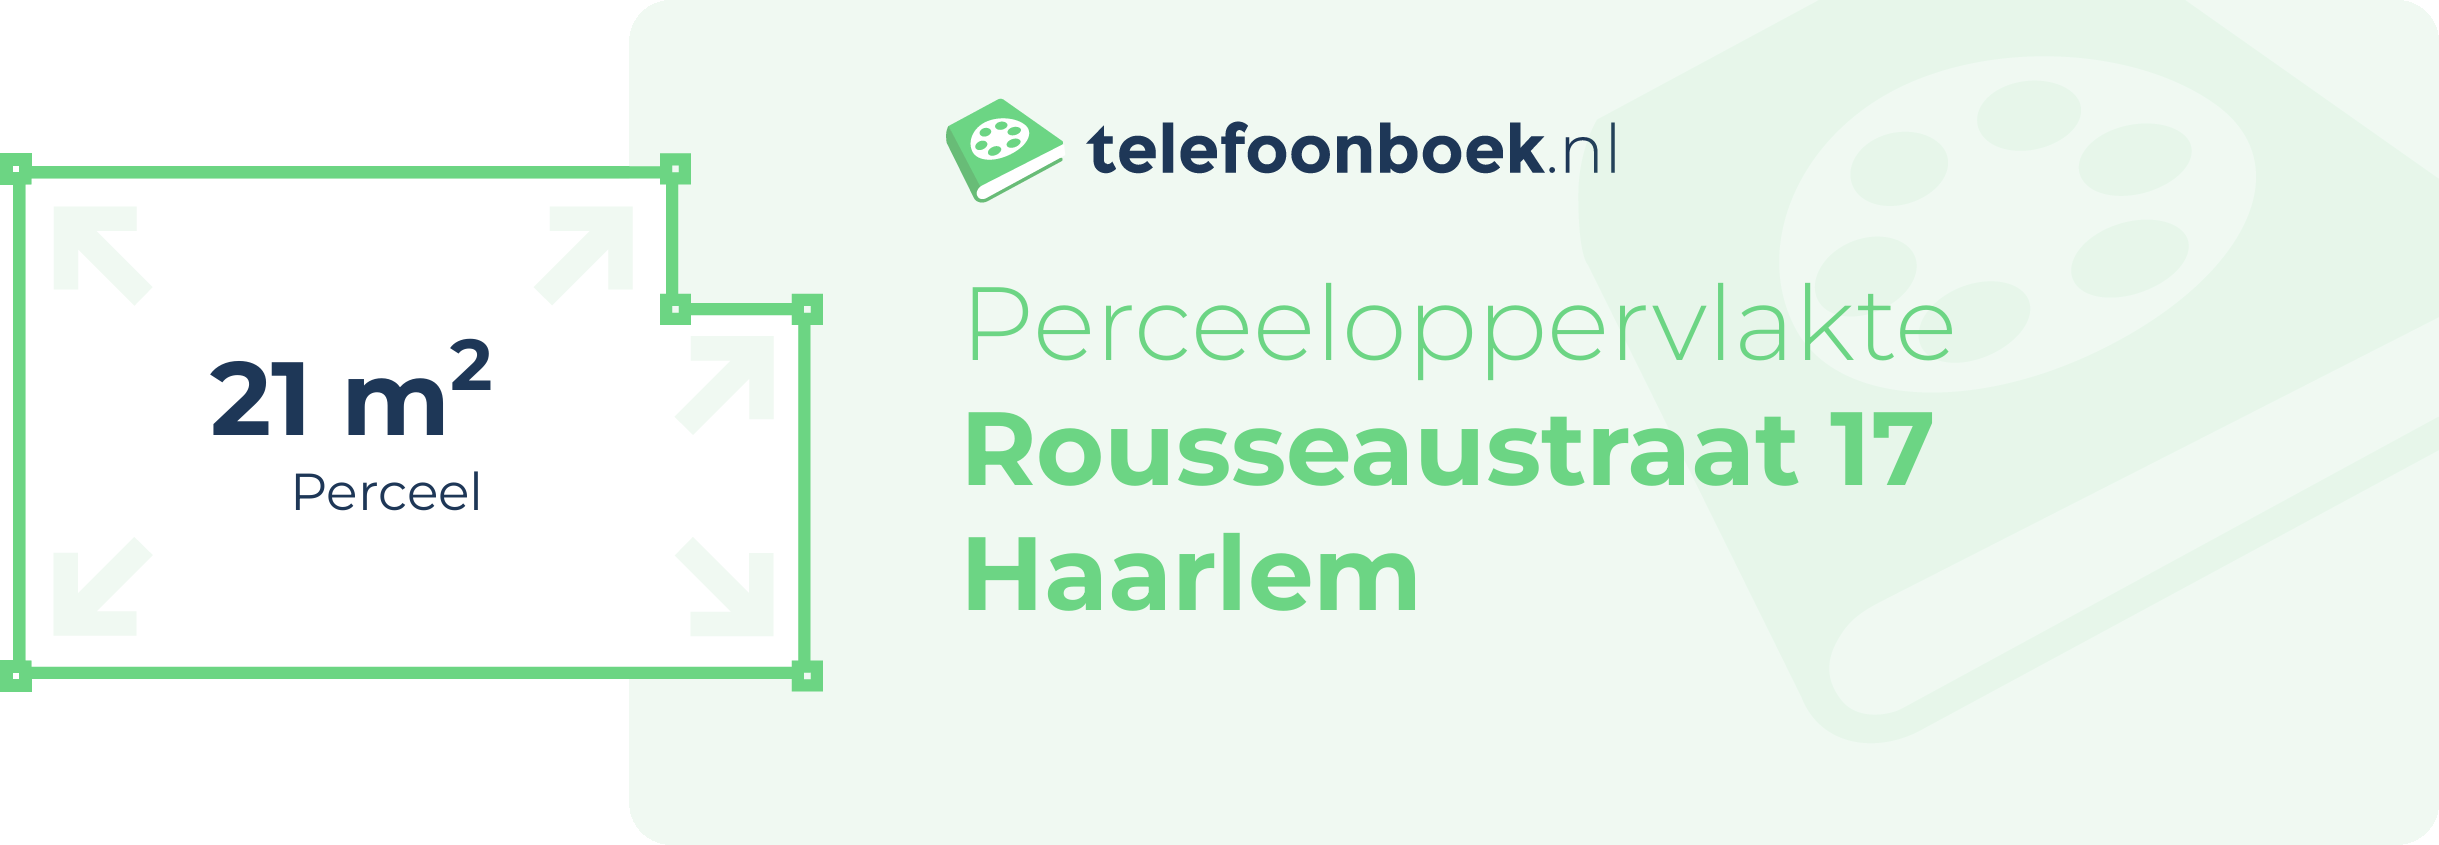 Perceeloppervlakte Rousseaustraat 17 Haarlem